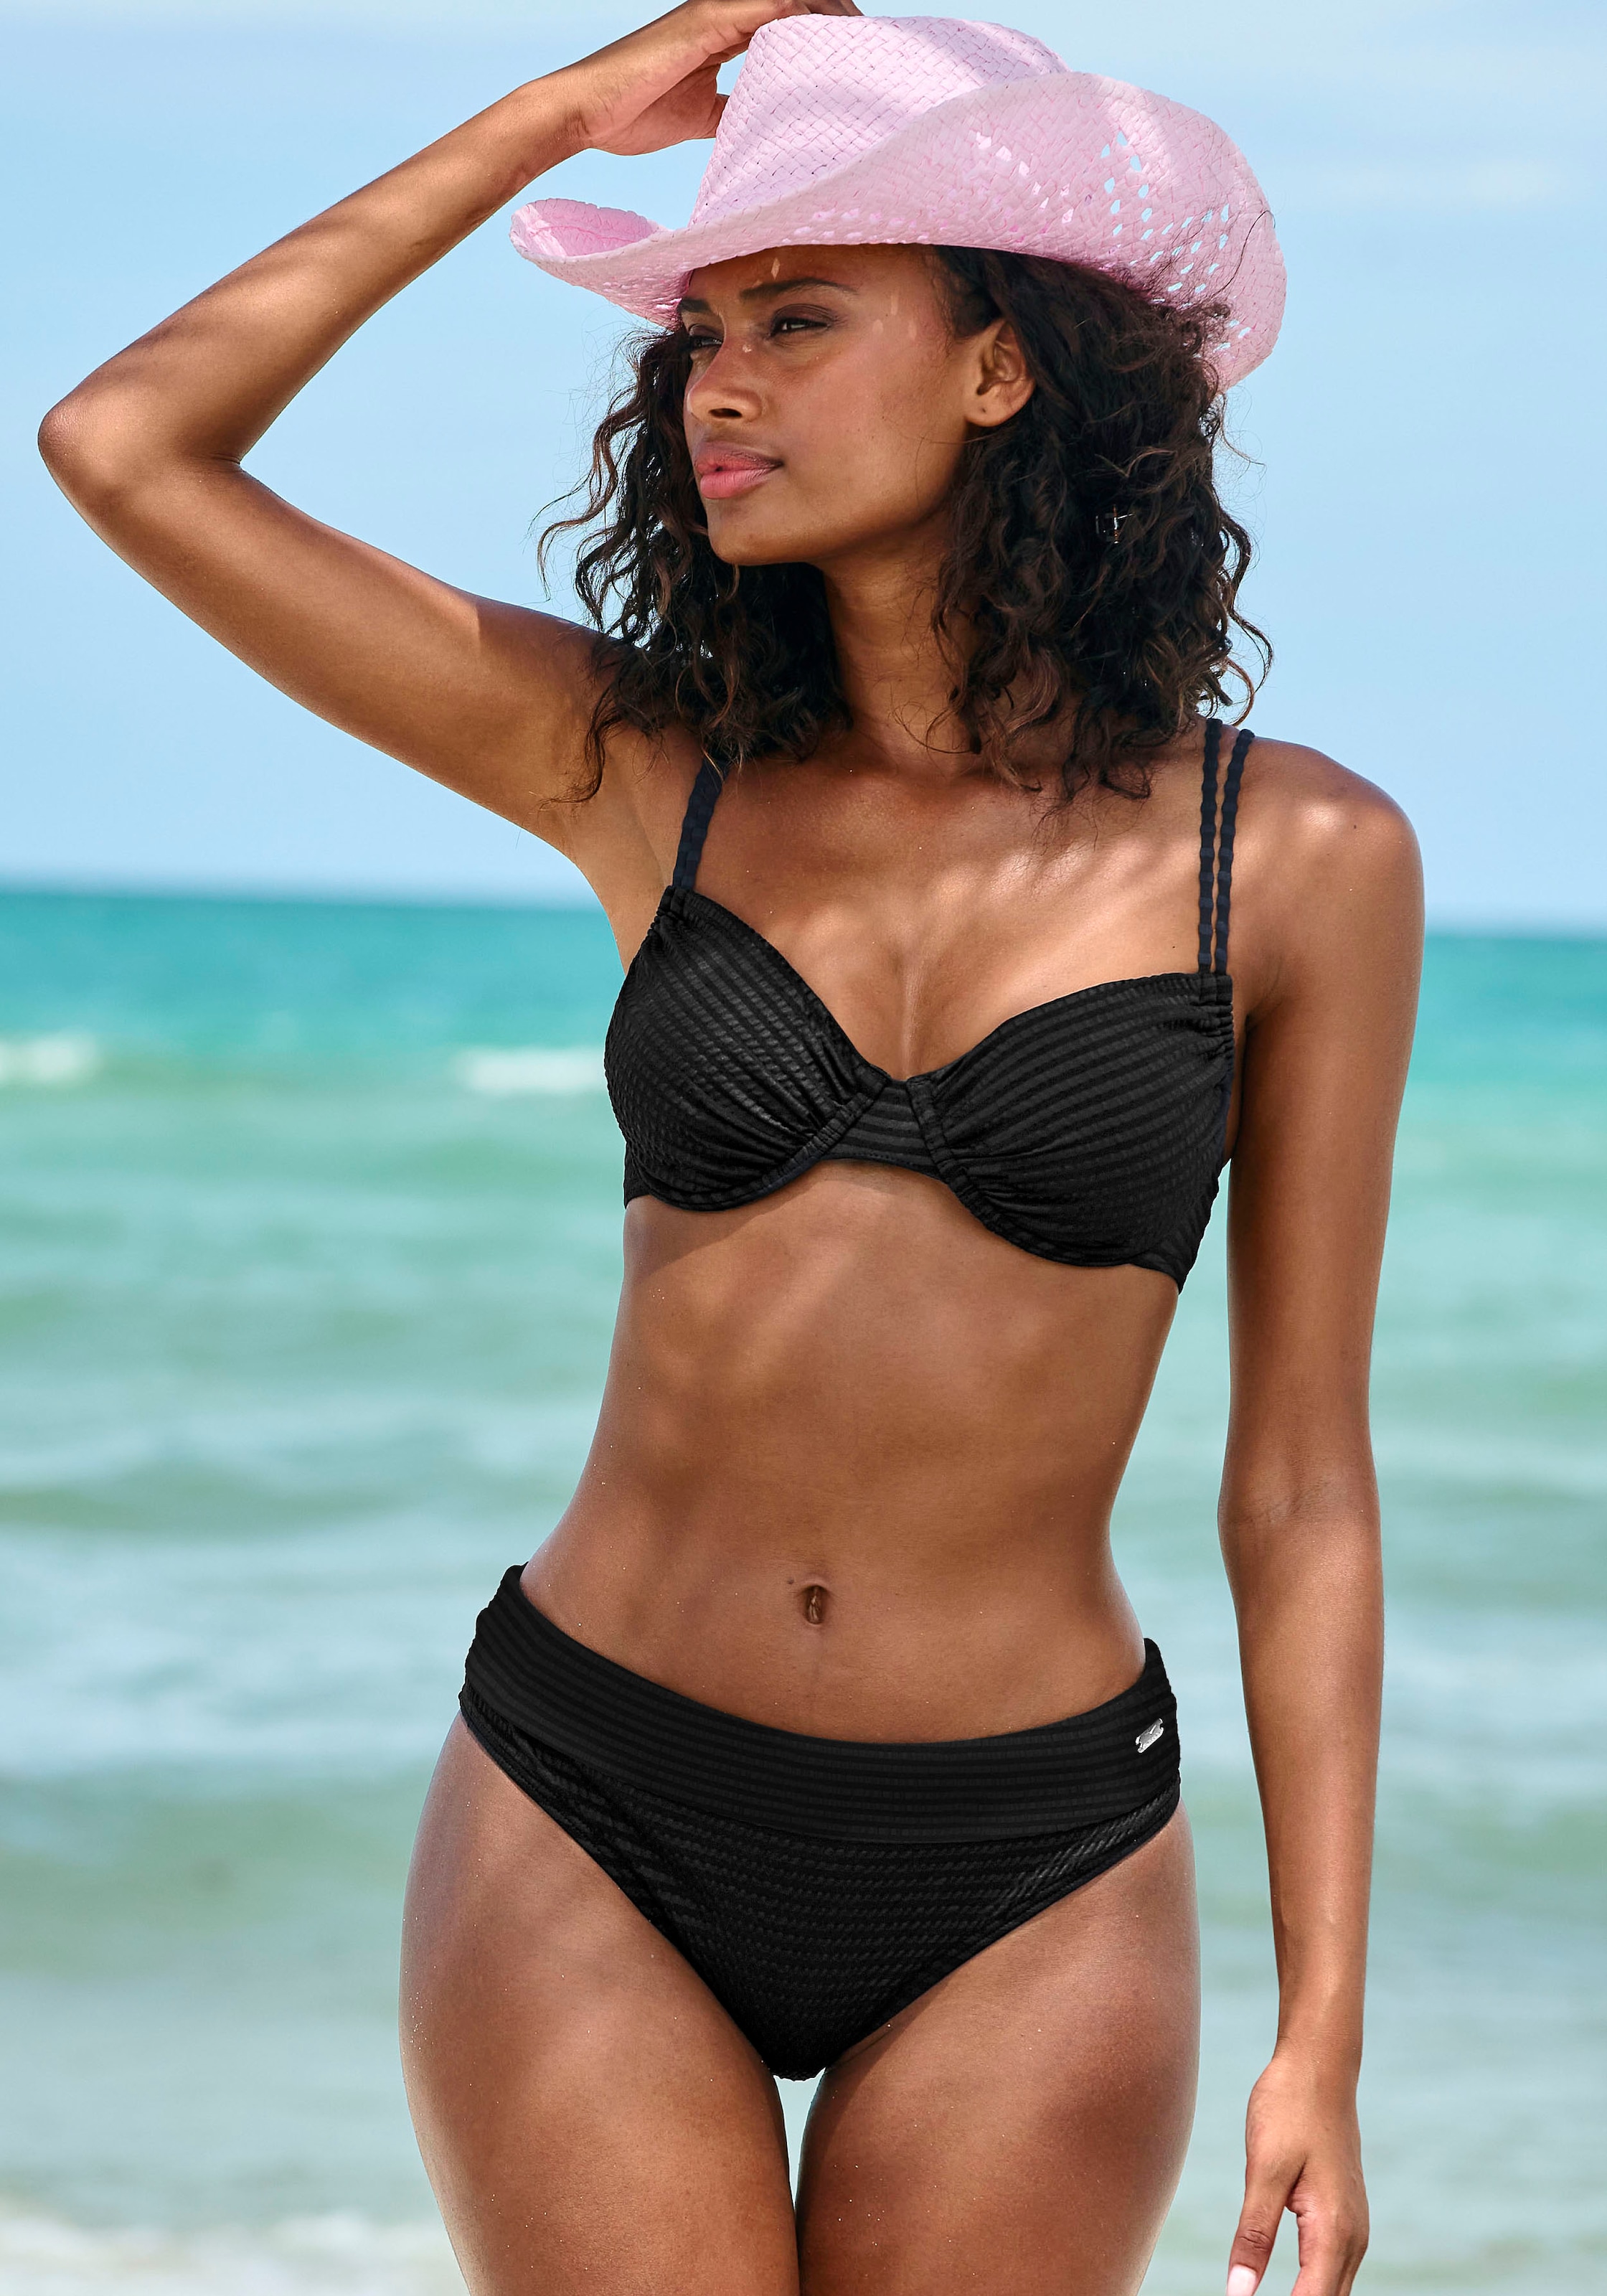 Venice Beach Bügel-Bikini "Aria", aus edler Strukturware